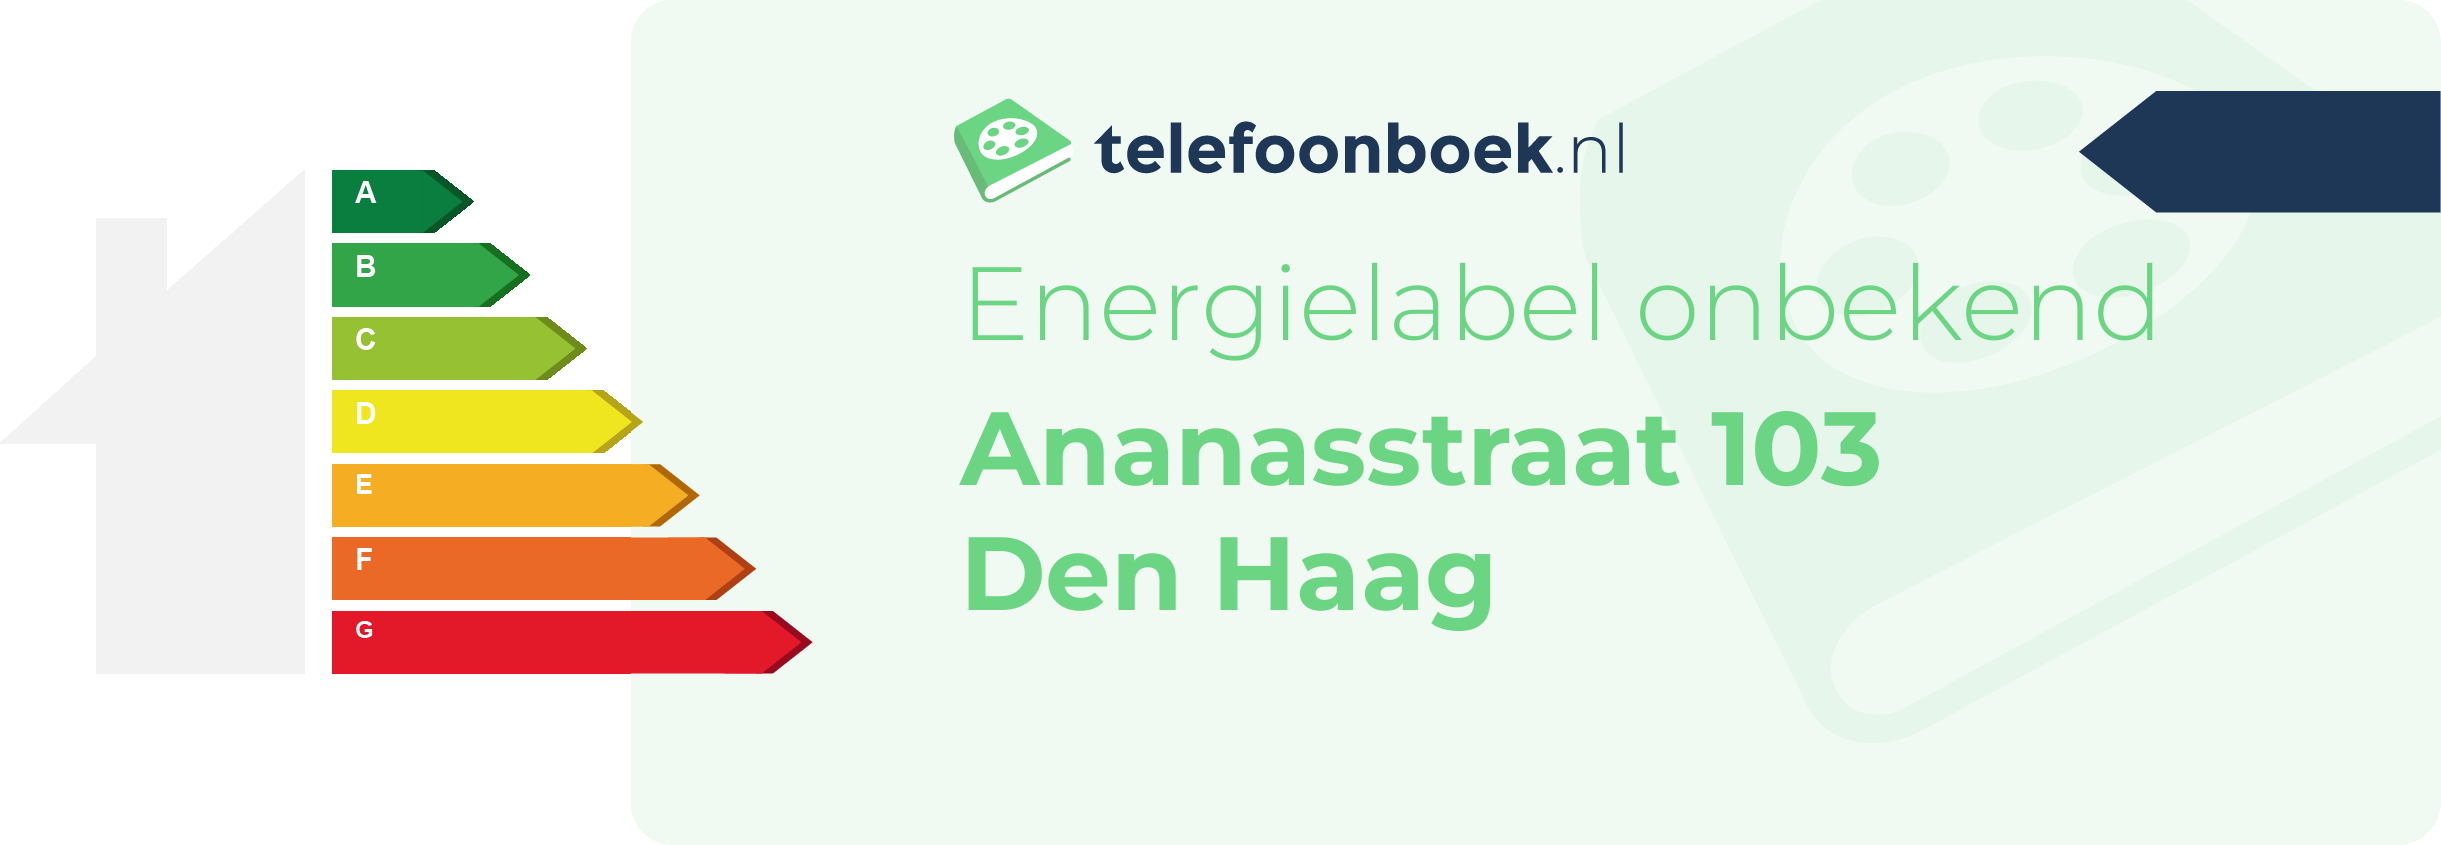 Energielabel Ananasstraat 103 Den Haag